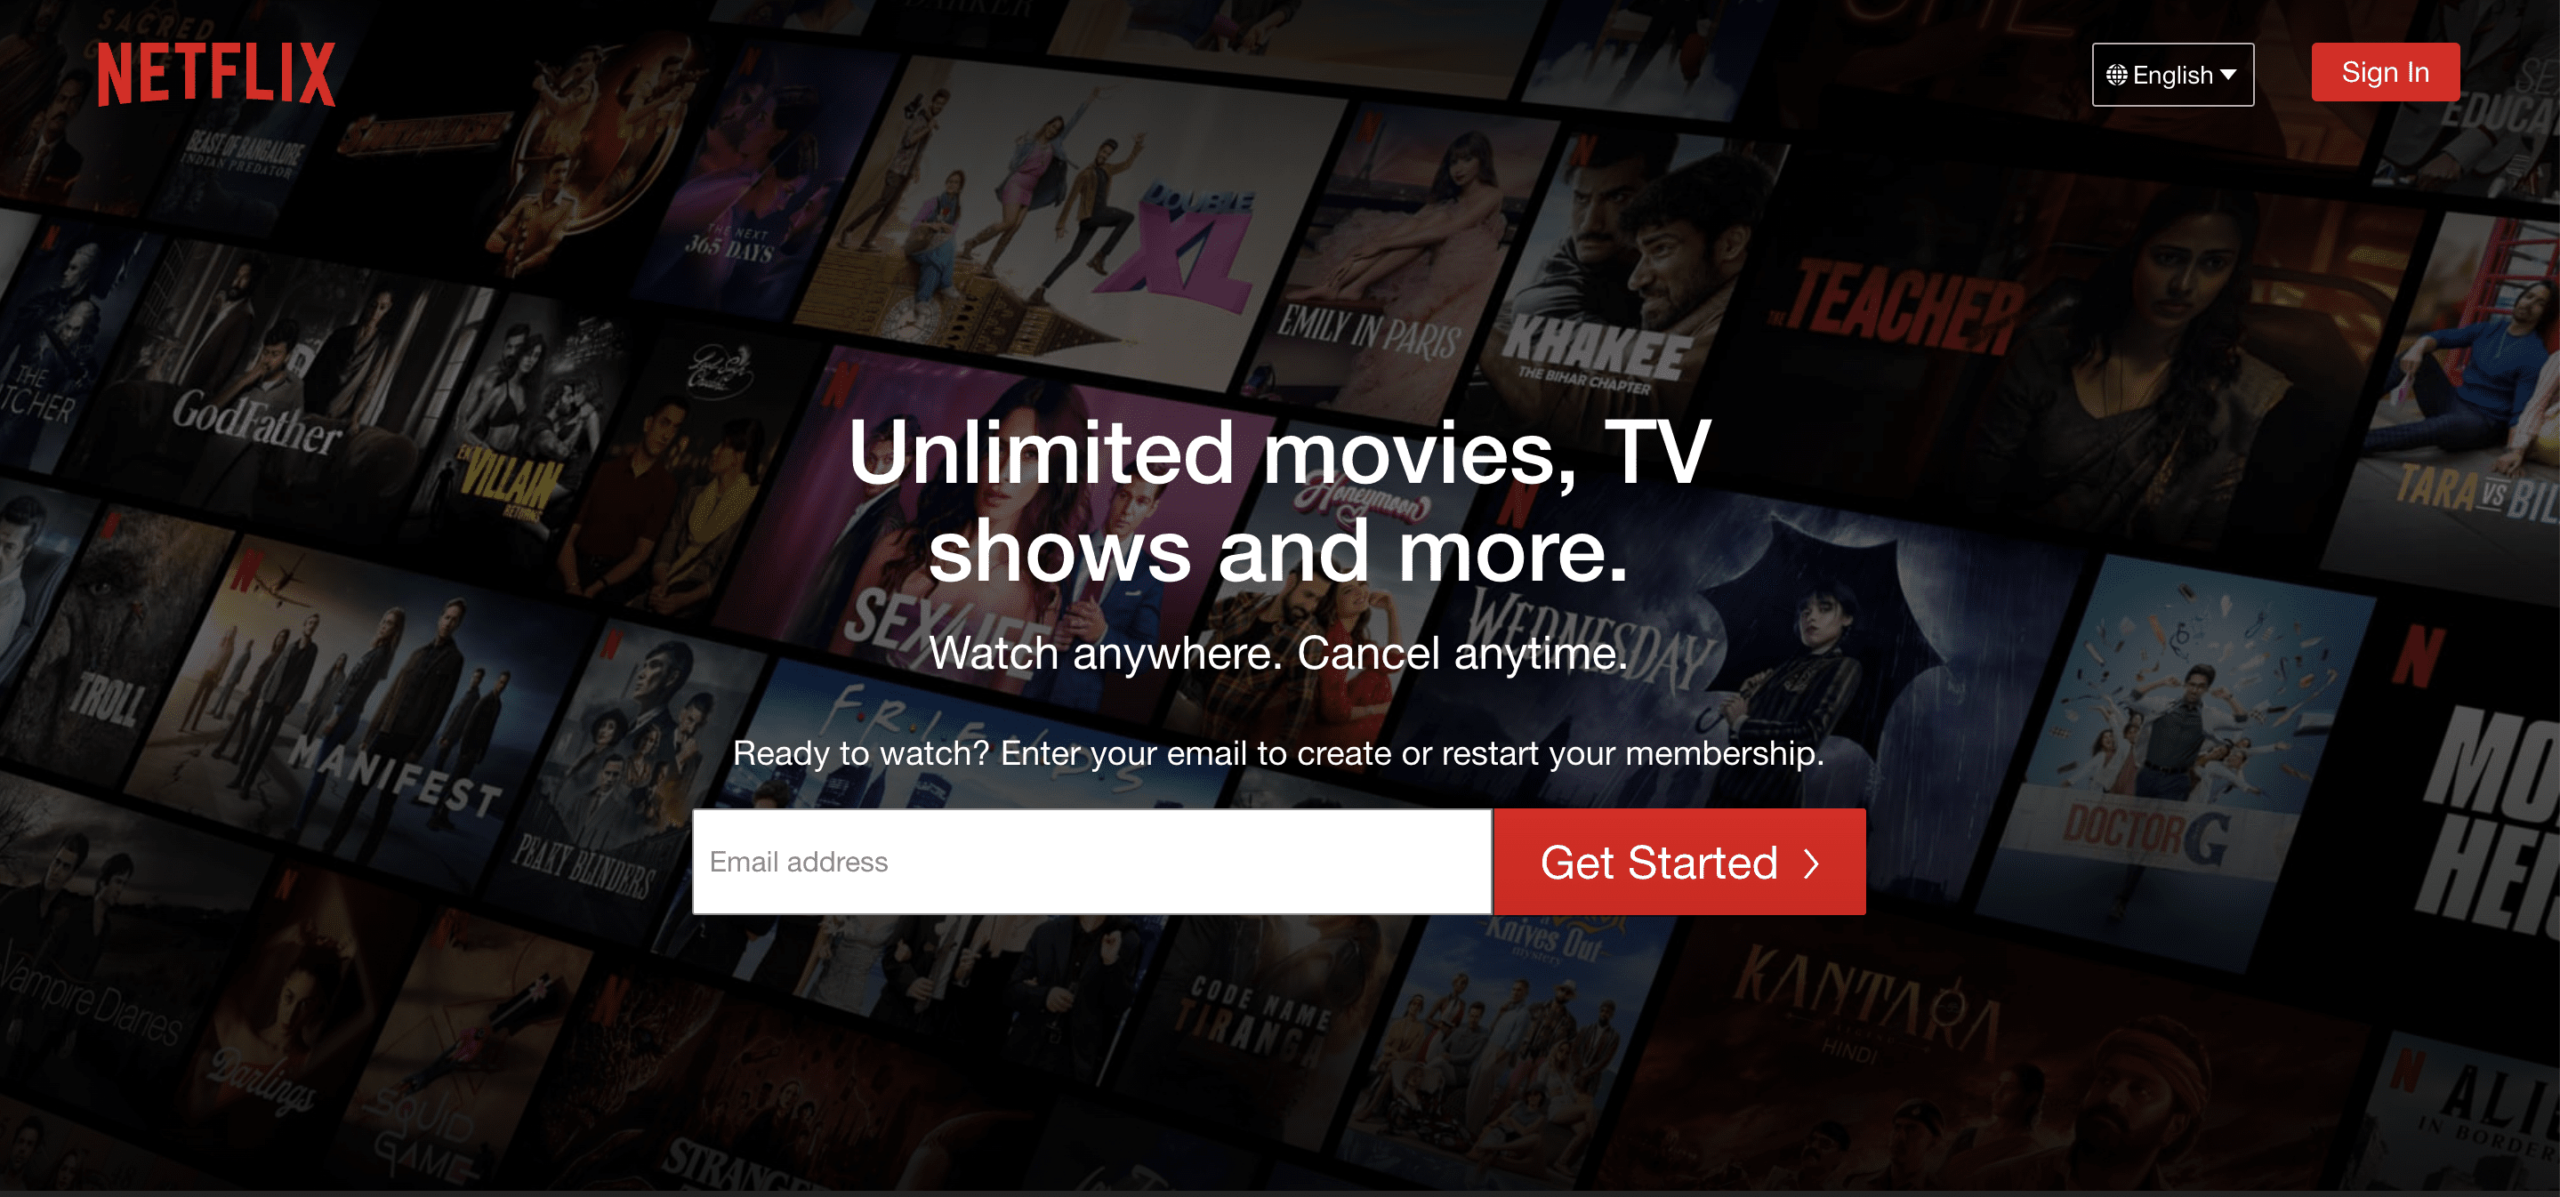 Modi legittimi per essere pagati per guardare Netflix